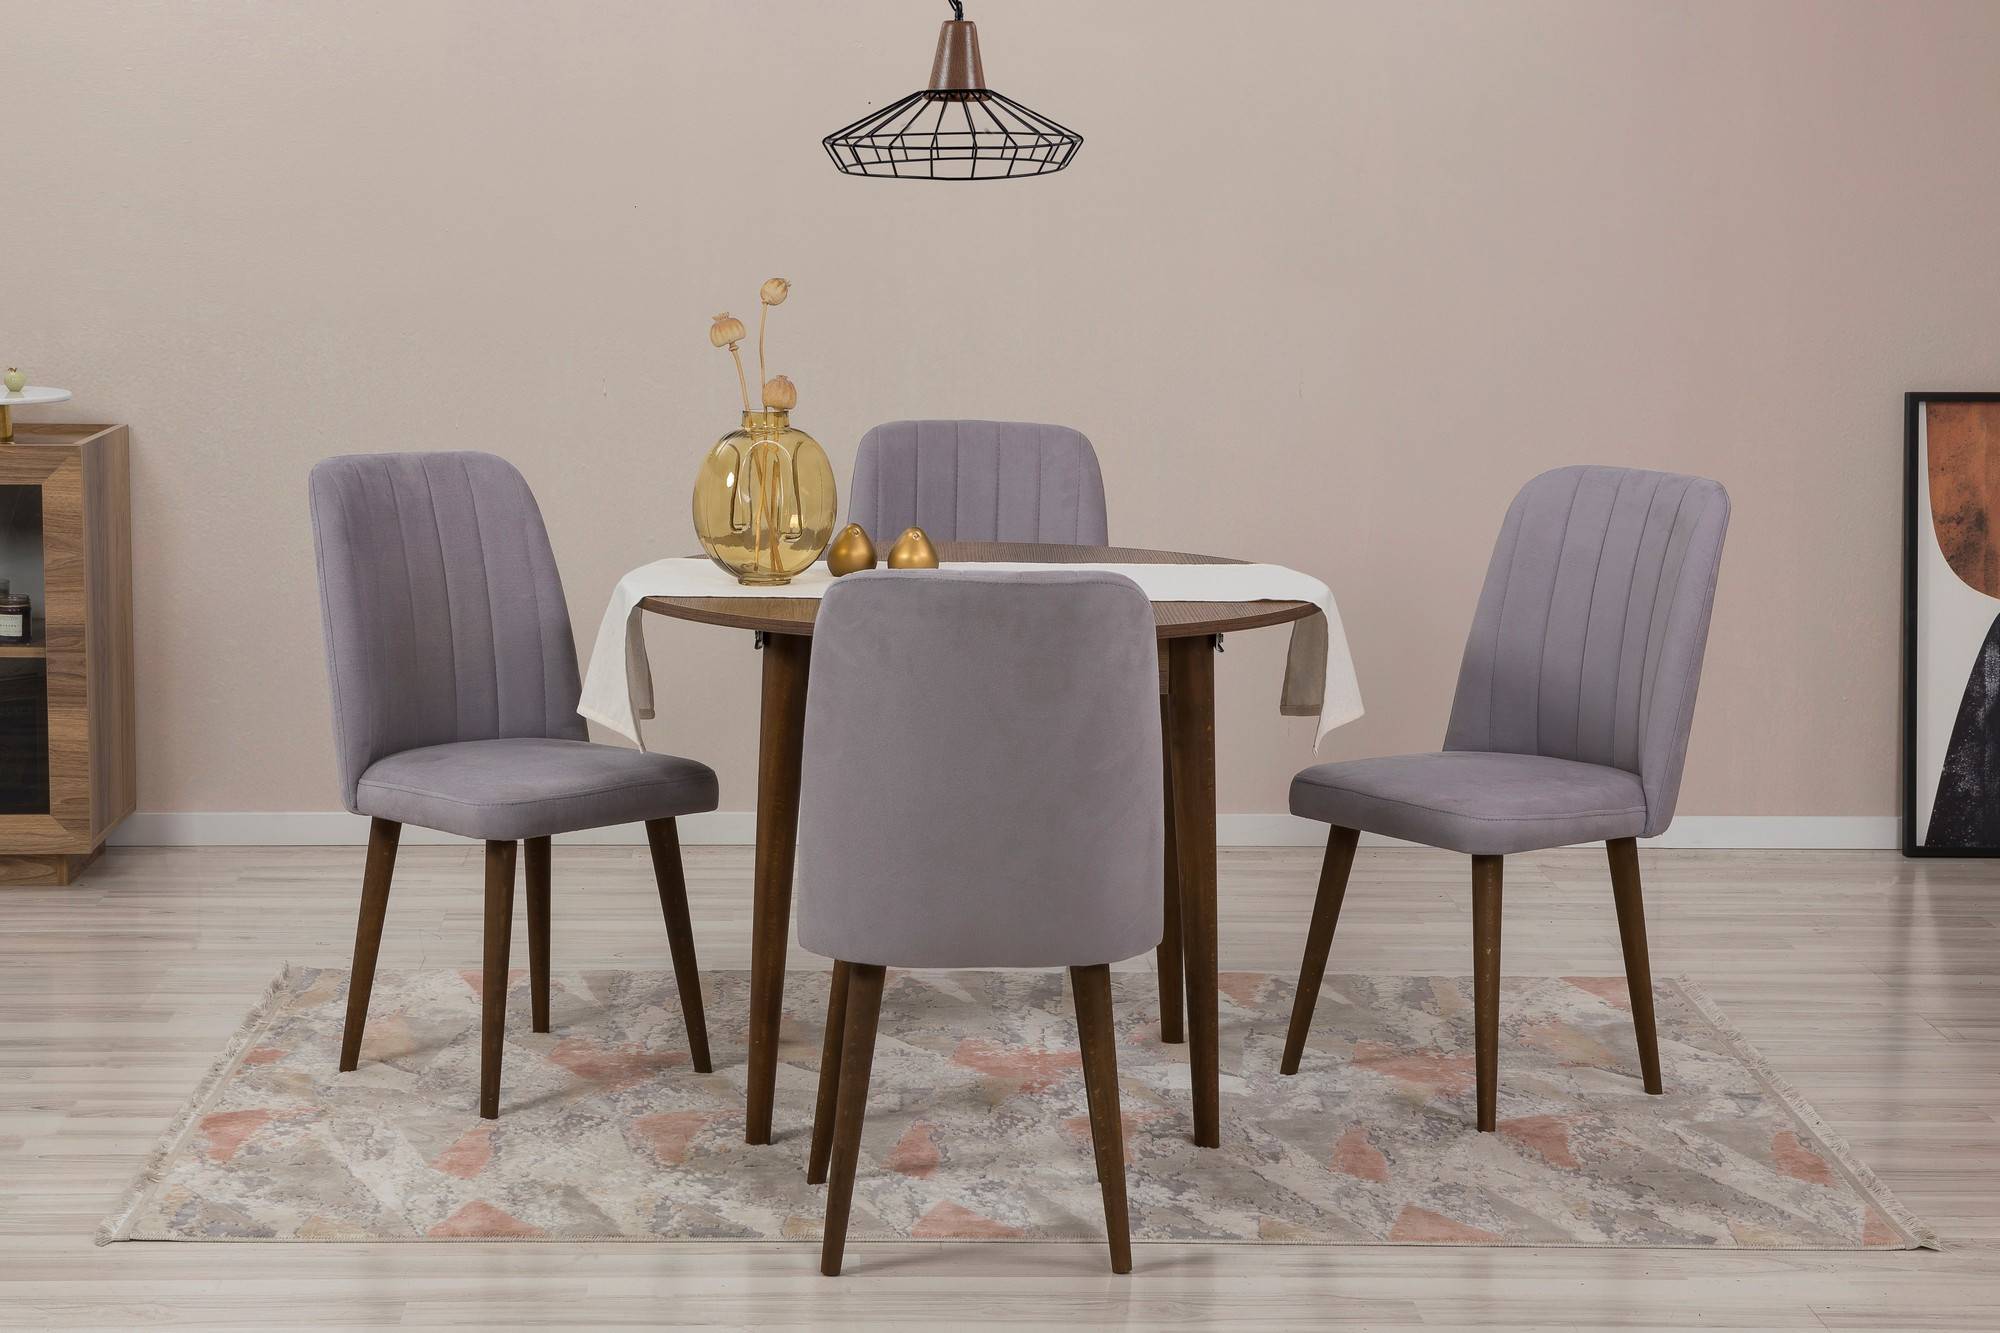 Juego de mesa redonda extensible y 4 sillas Malva madera oscura y tela gris claro.